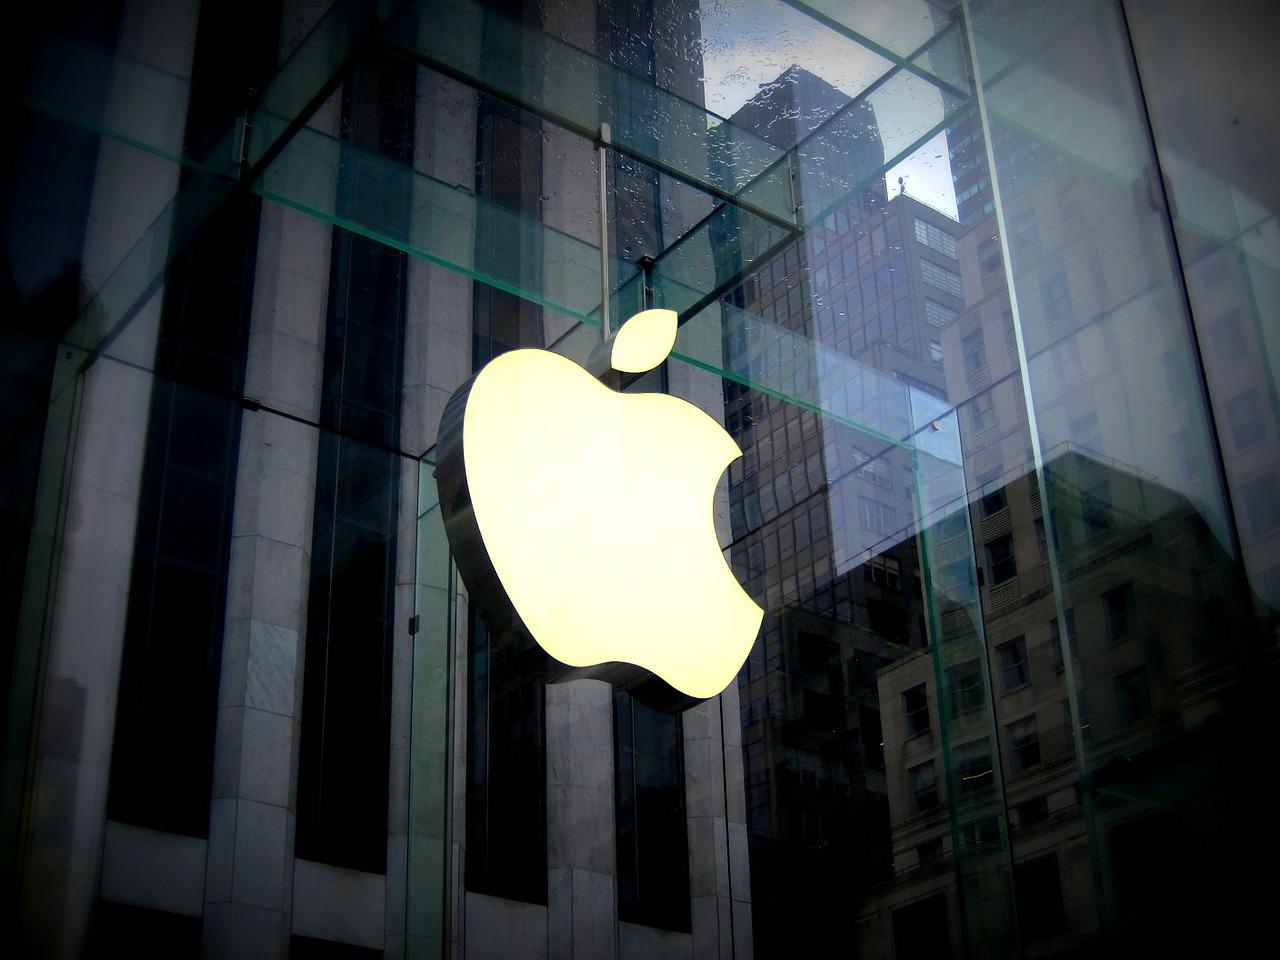 Le premier syndicat dans un Apple Store américain pourrait voir le jour